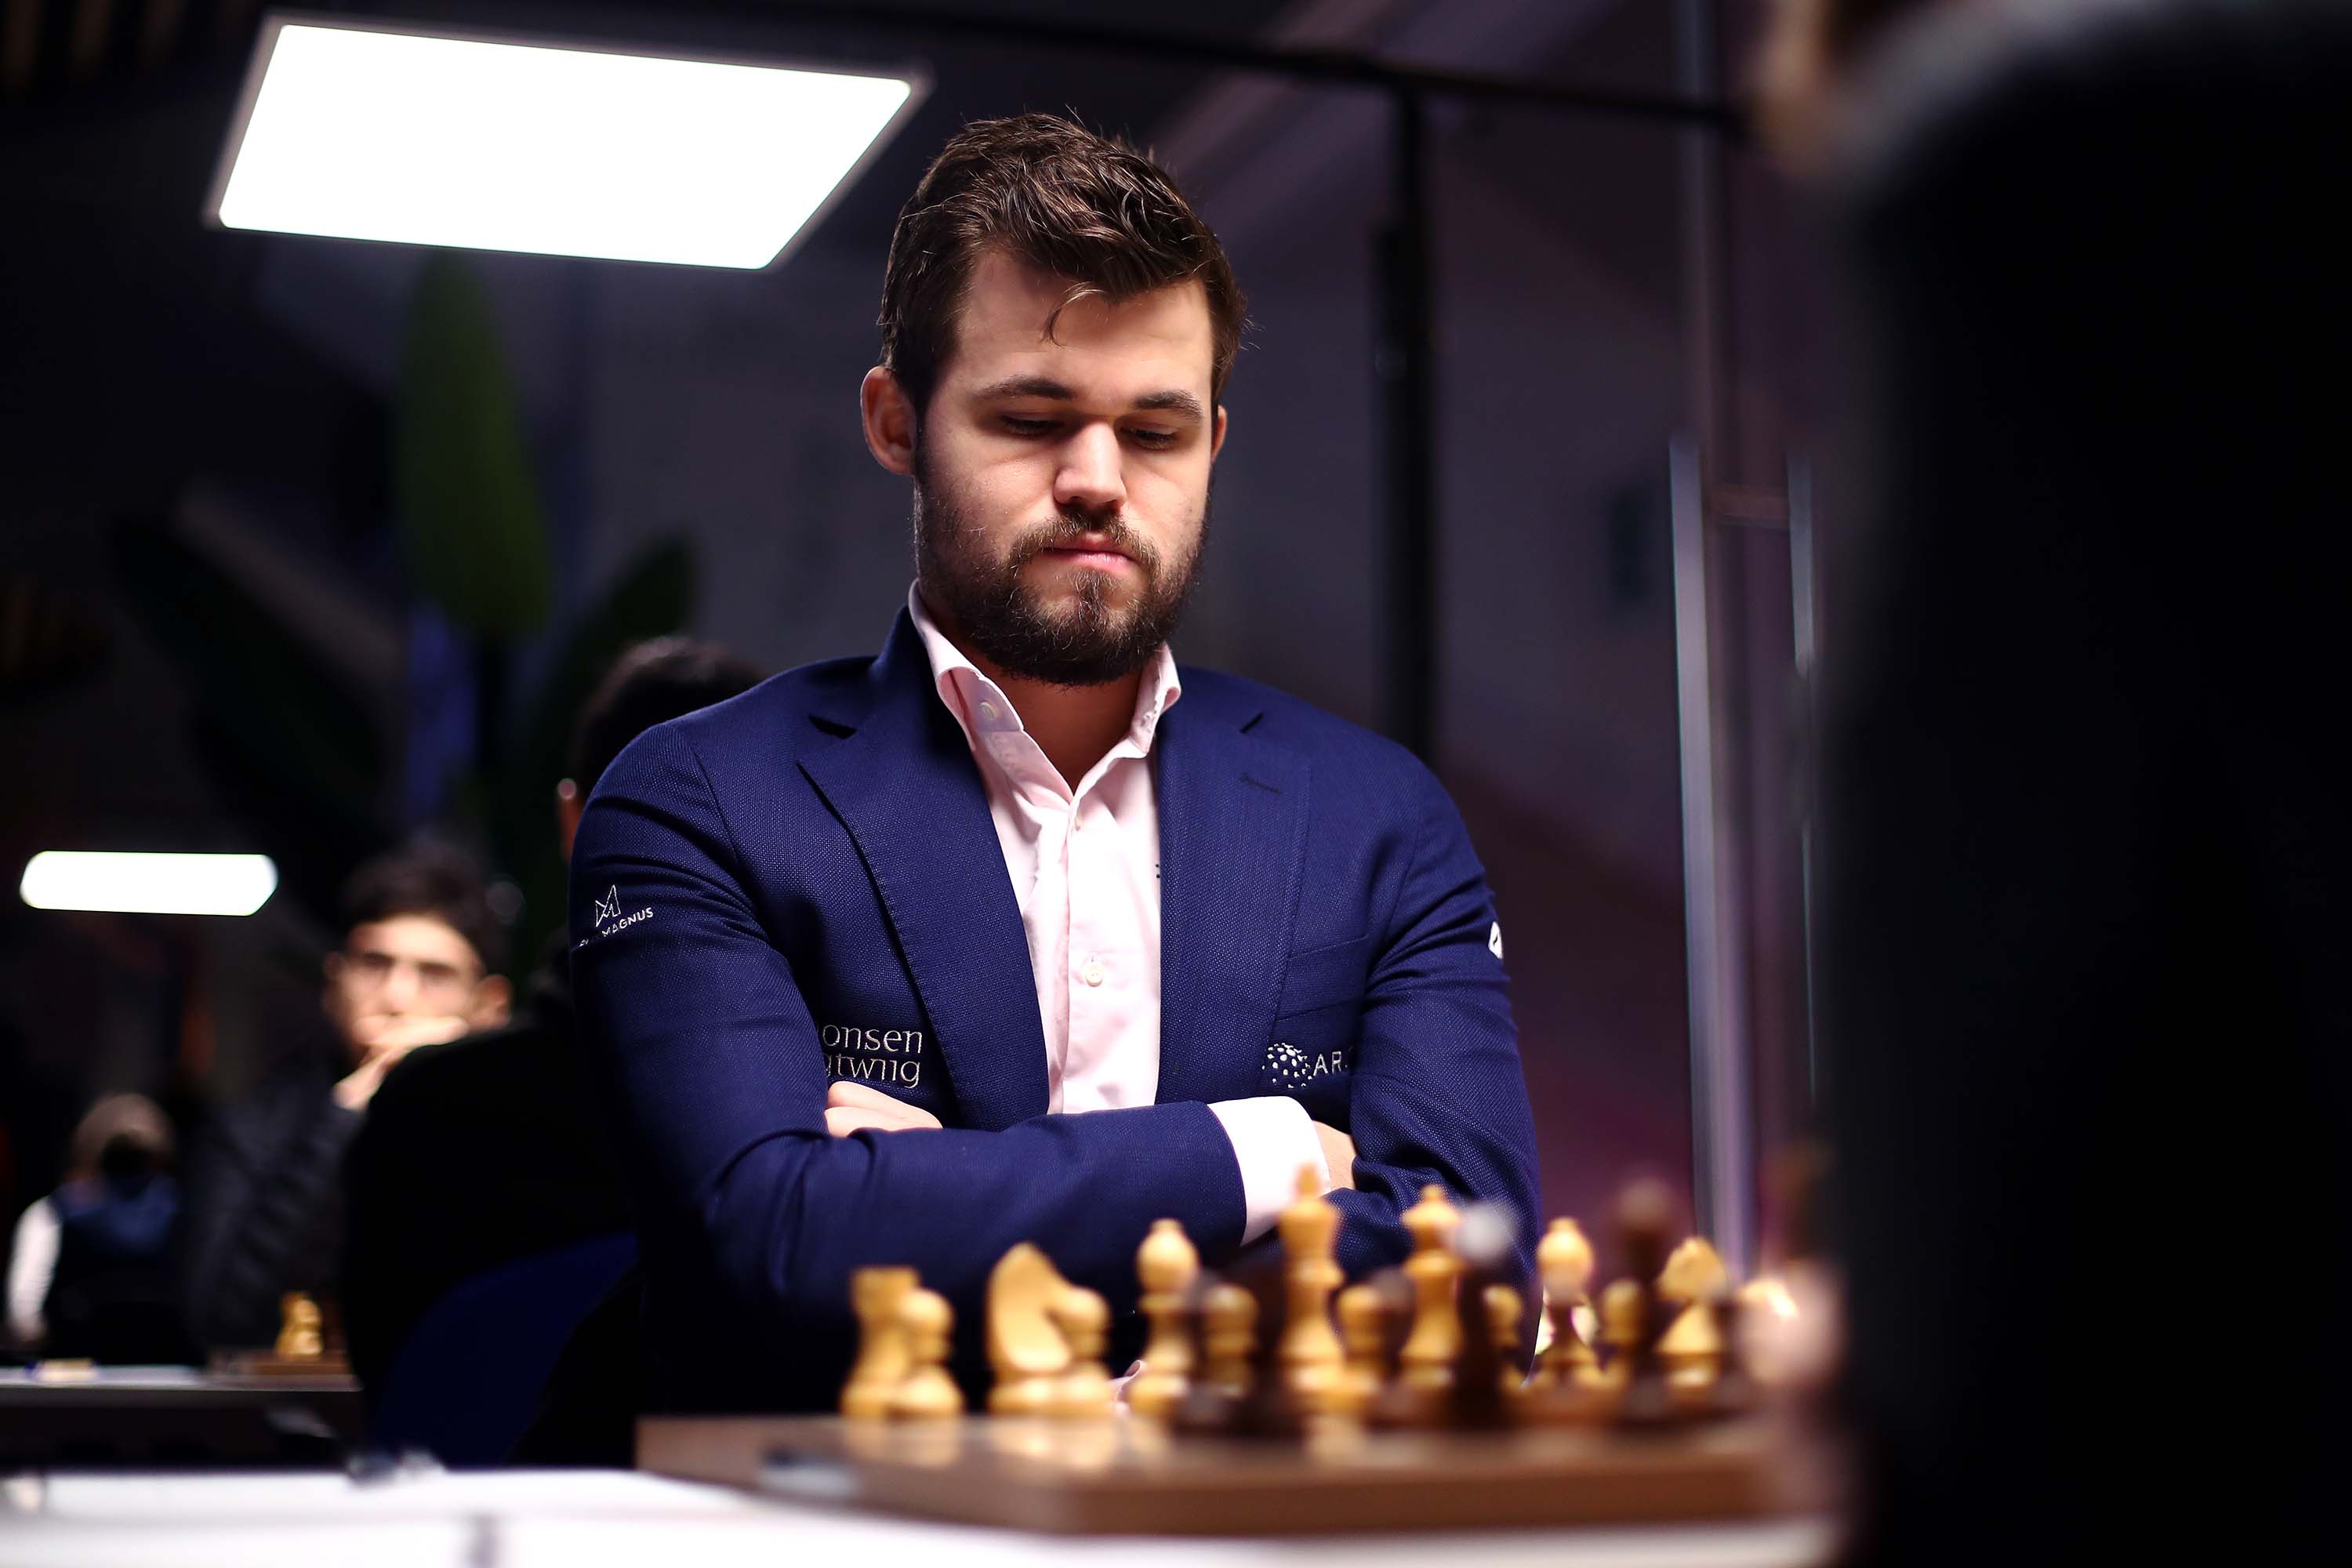 chess24 - Grandmaster. Funny guy. Magnus Carlsen's Twitter